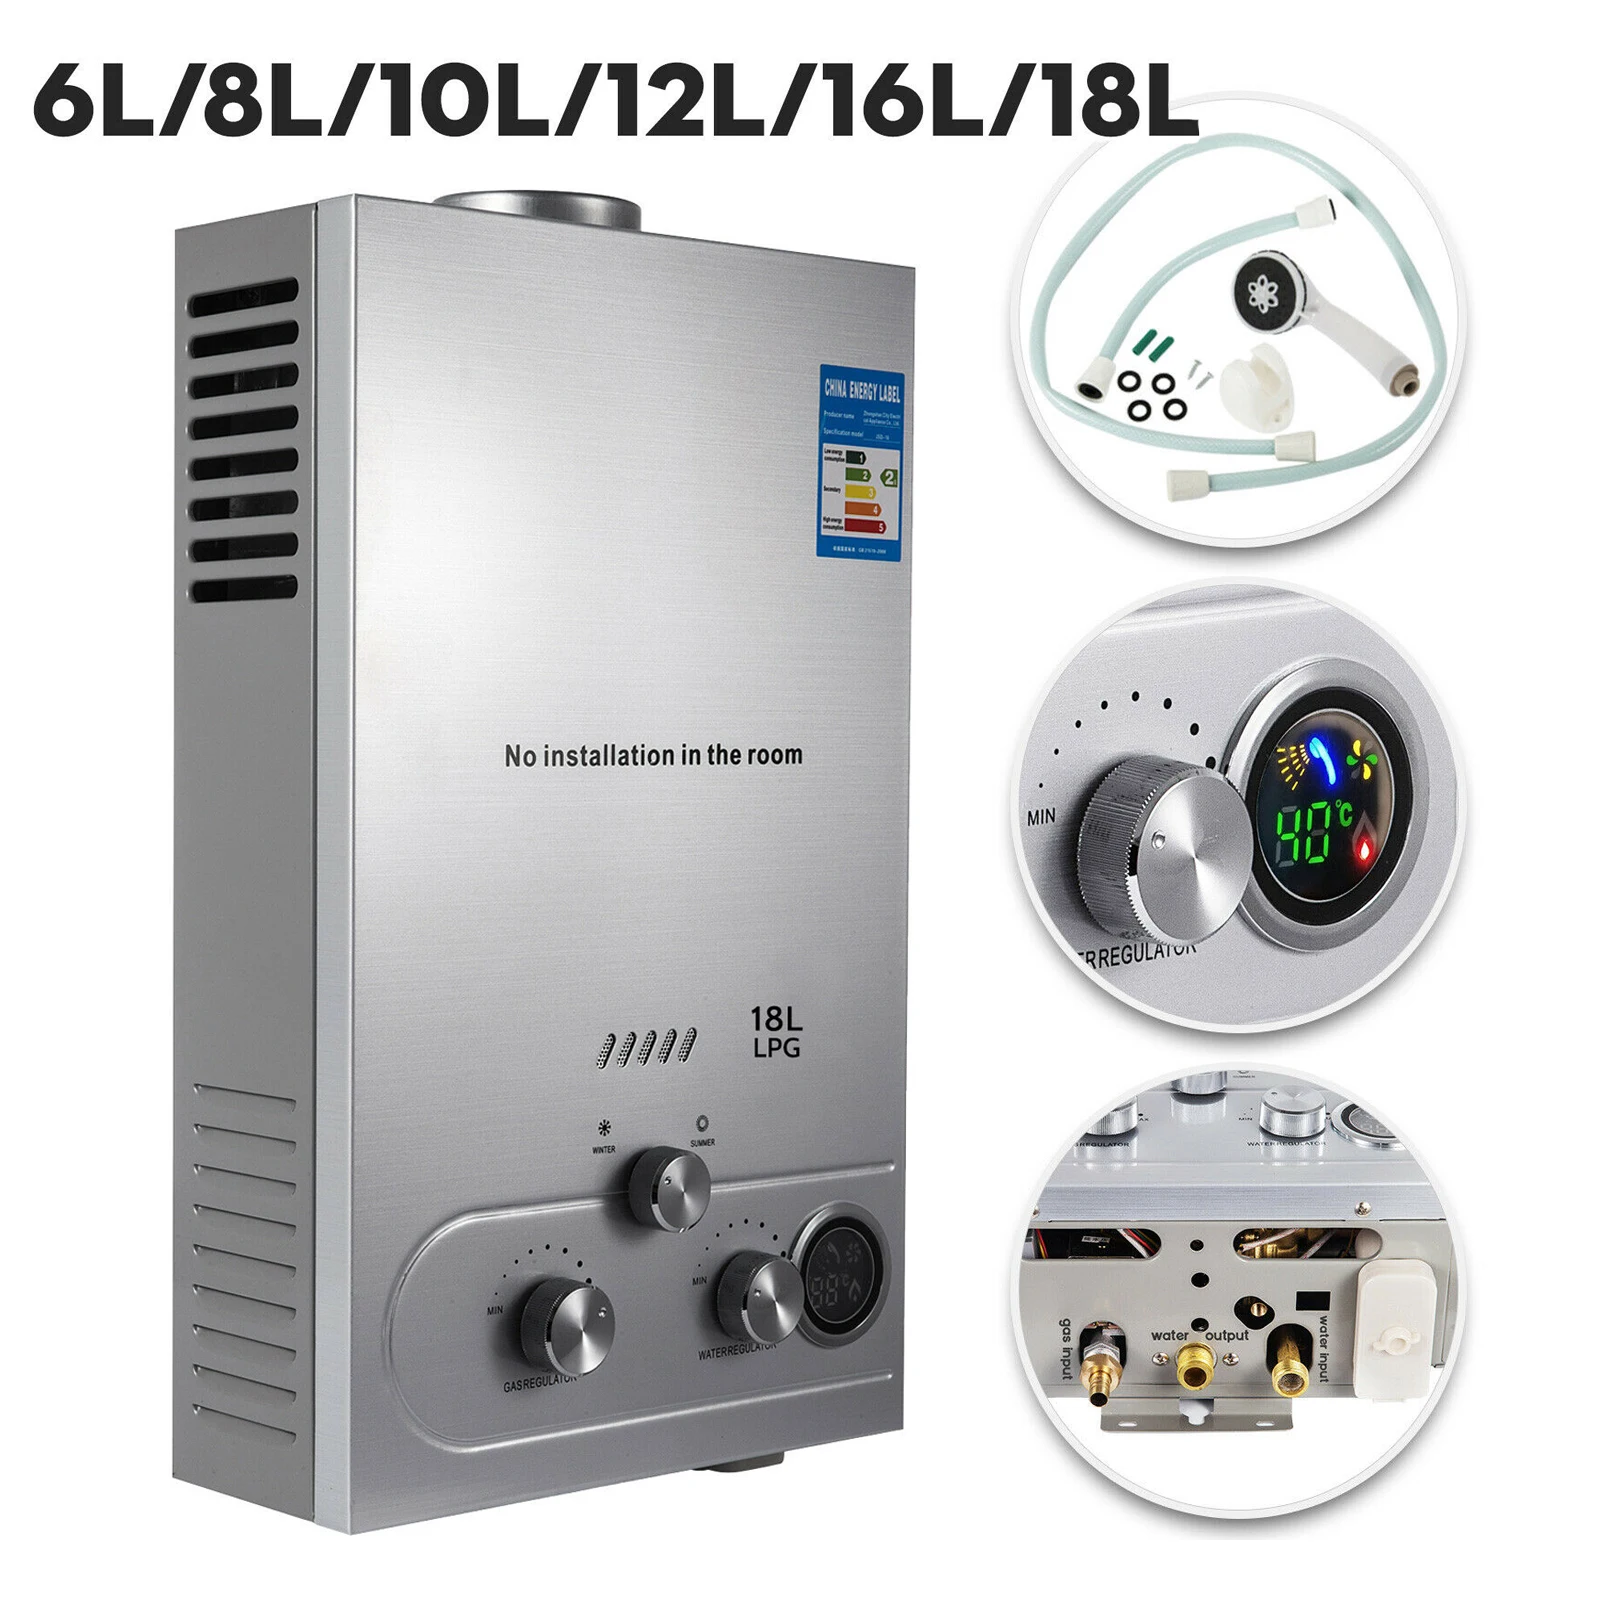 

LPG Water Heater 6L/8L/10L/12L/16L/18L 36KW LPG Propane Water Heater Thermostat Heater Butane Gas Water Heater For Camping Home